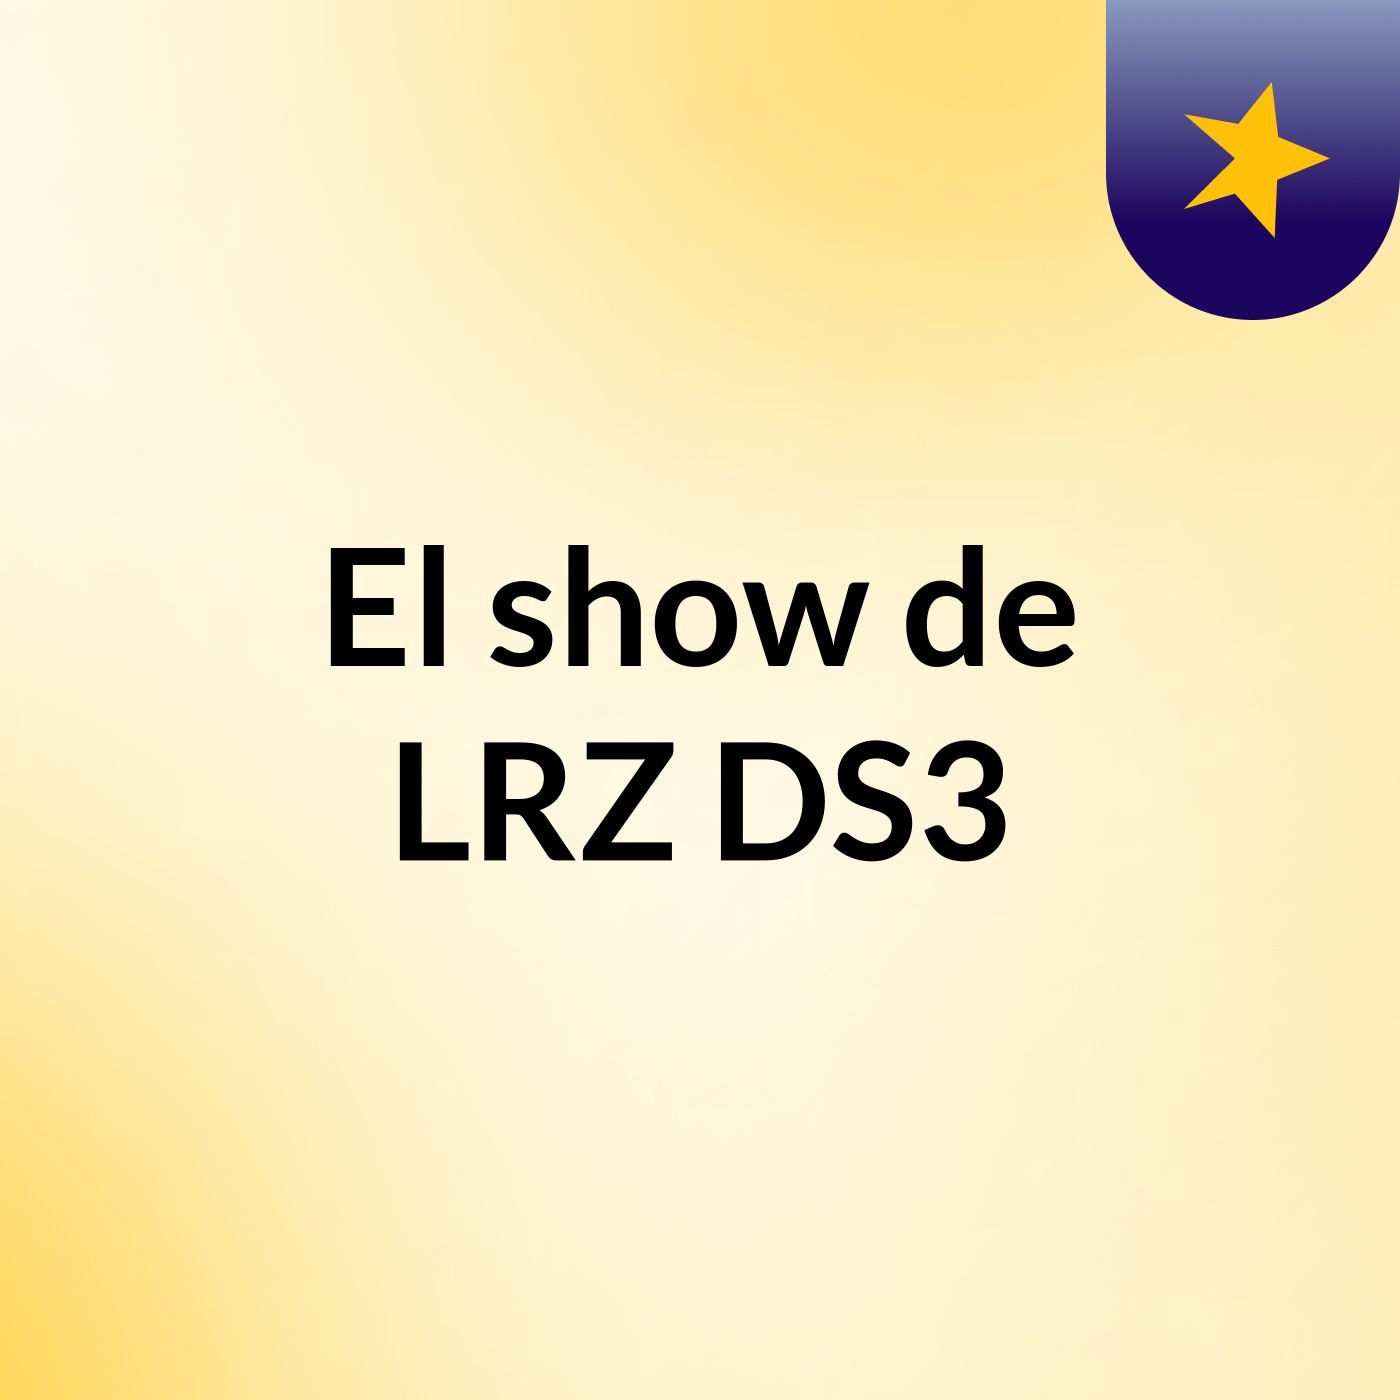 El show de LRZ DS3